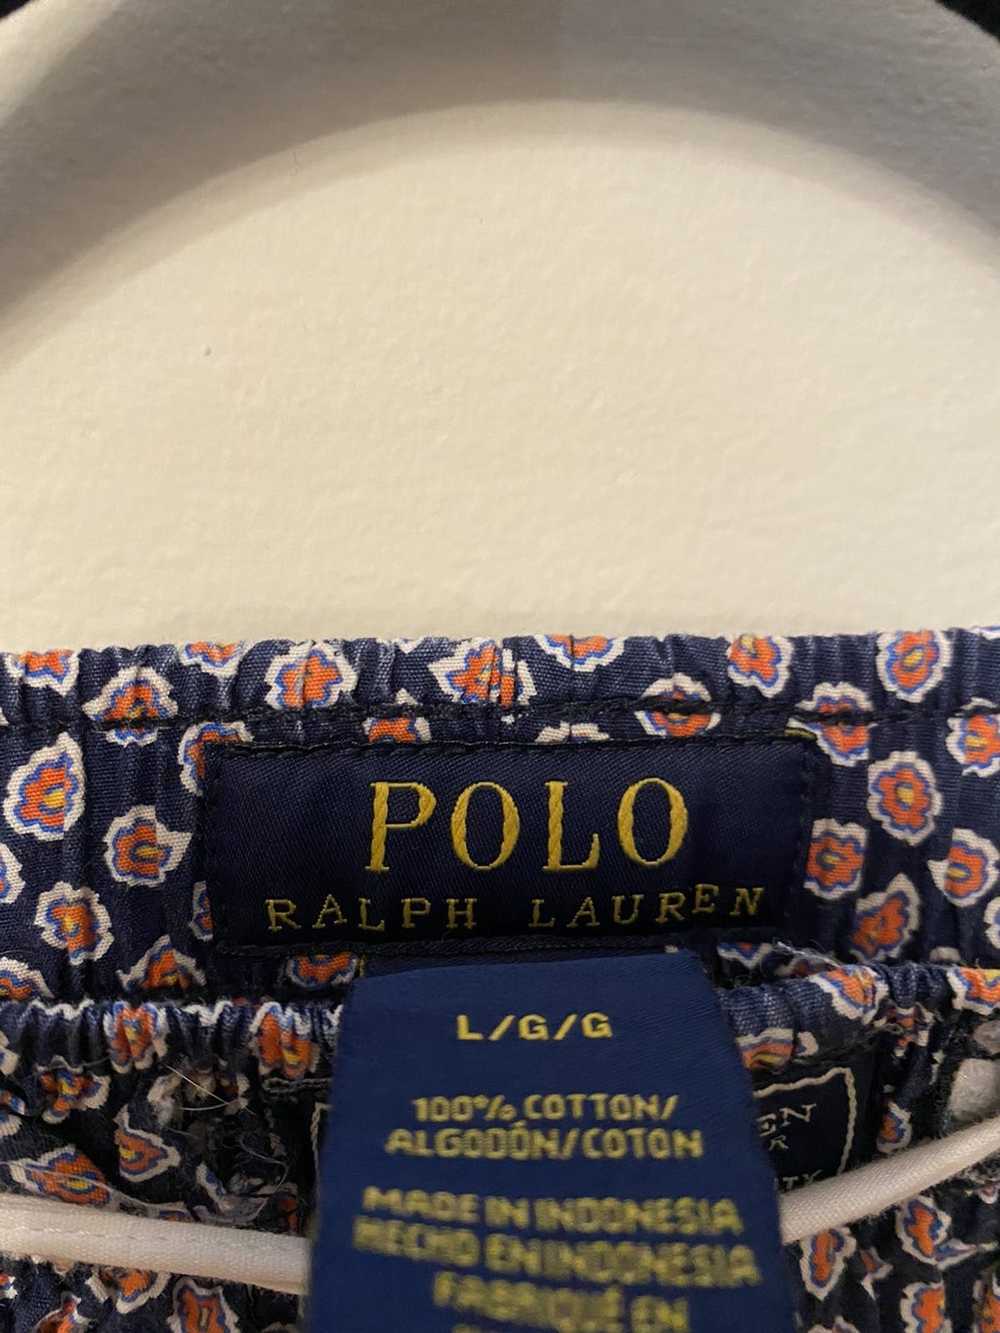 Polo Ralph Lauren Ralph Lauren Paisley Pants - image 3